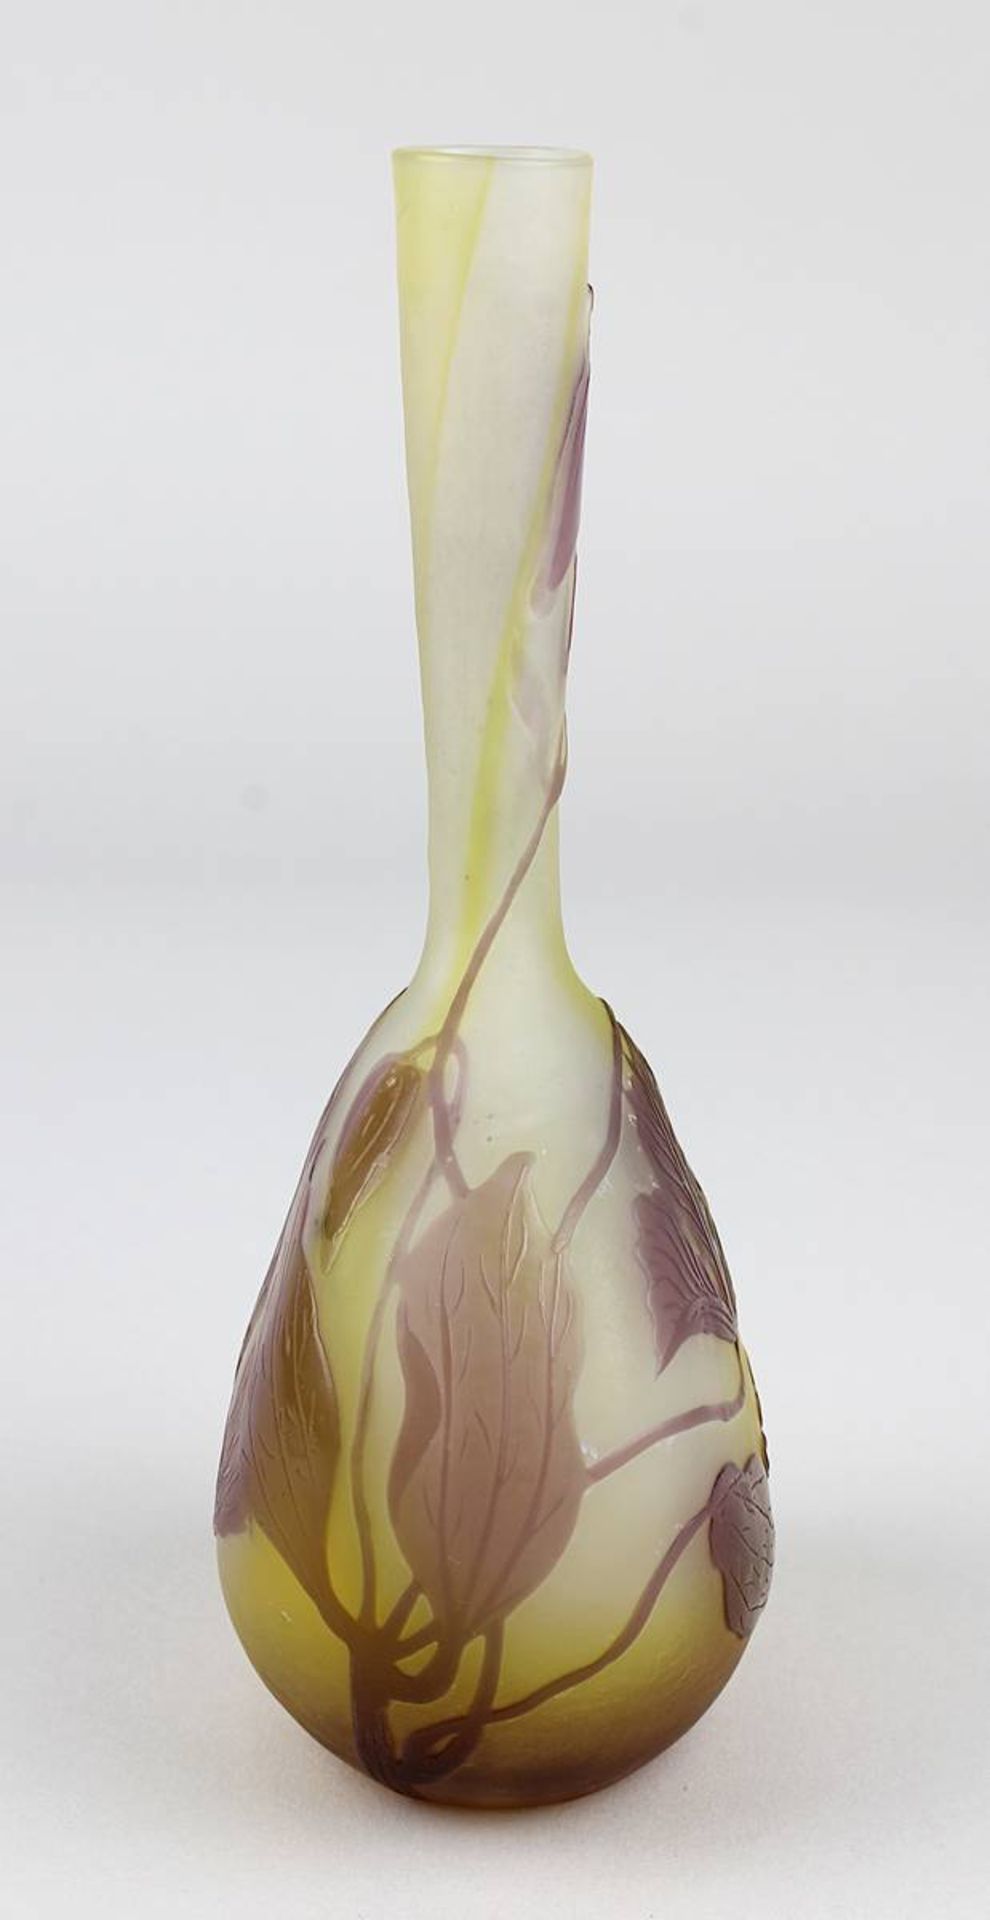 Gallé Jugendstil-Vase mit Windenblütenmotiv, Nancy 1906 - 1914, dickbauchiger Klarglaskörper mit - Image 2 of 4